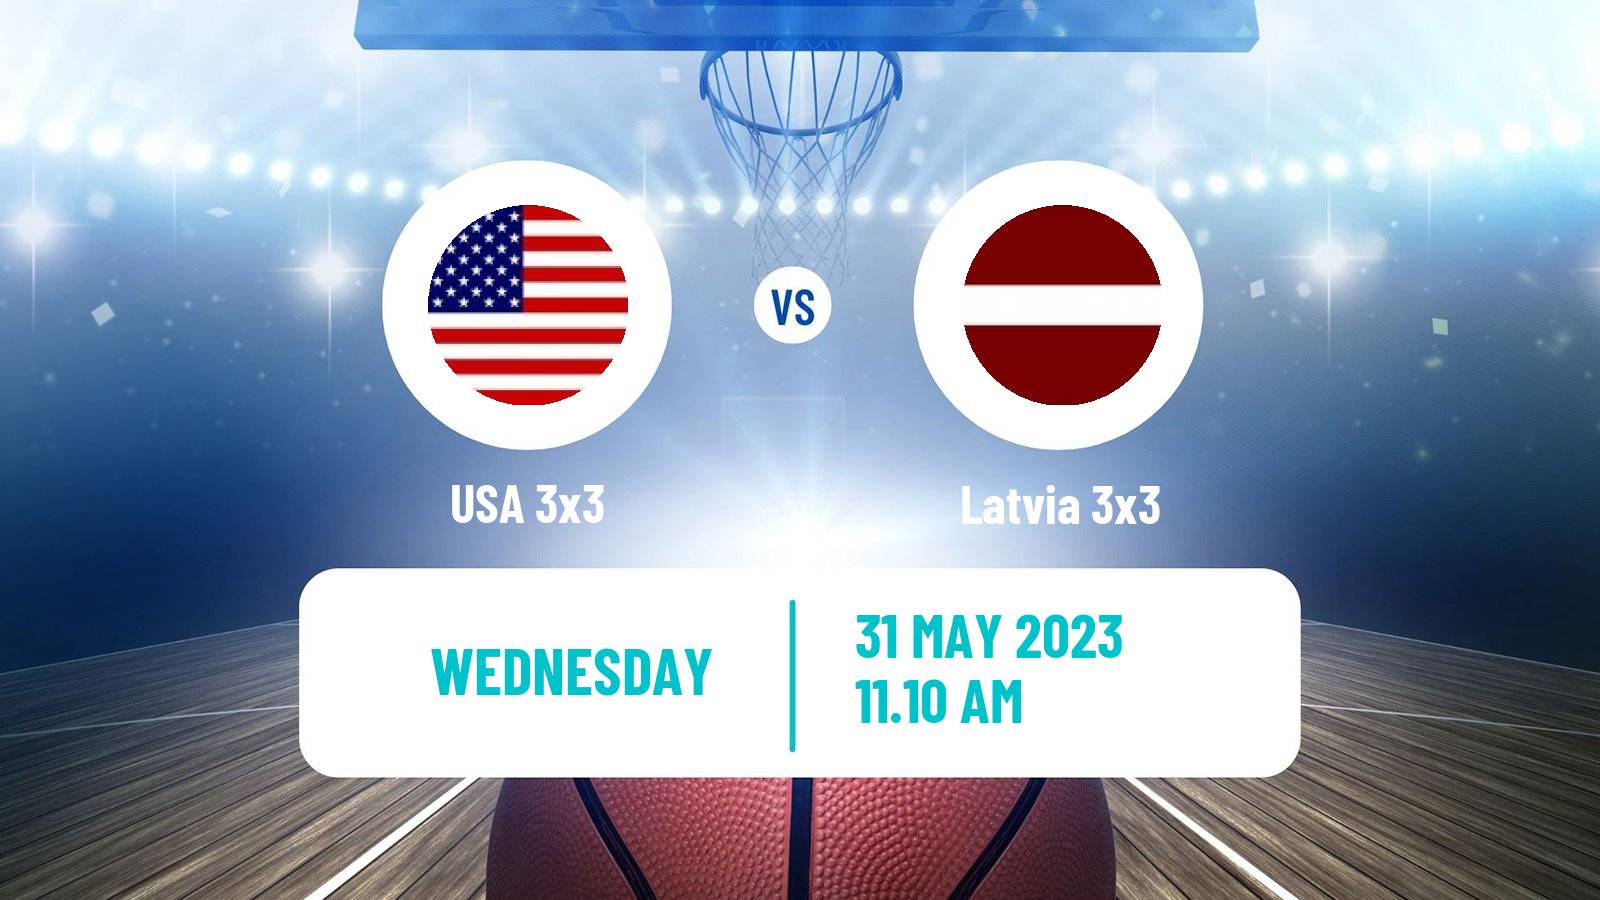 Basketball World Cup Basketball 3x3 USA 3x3 - Latvia 3x3